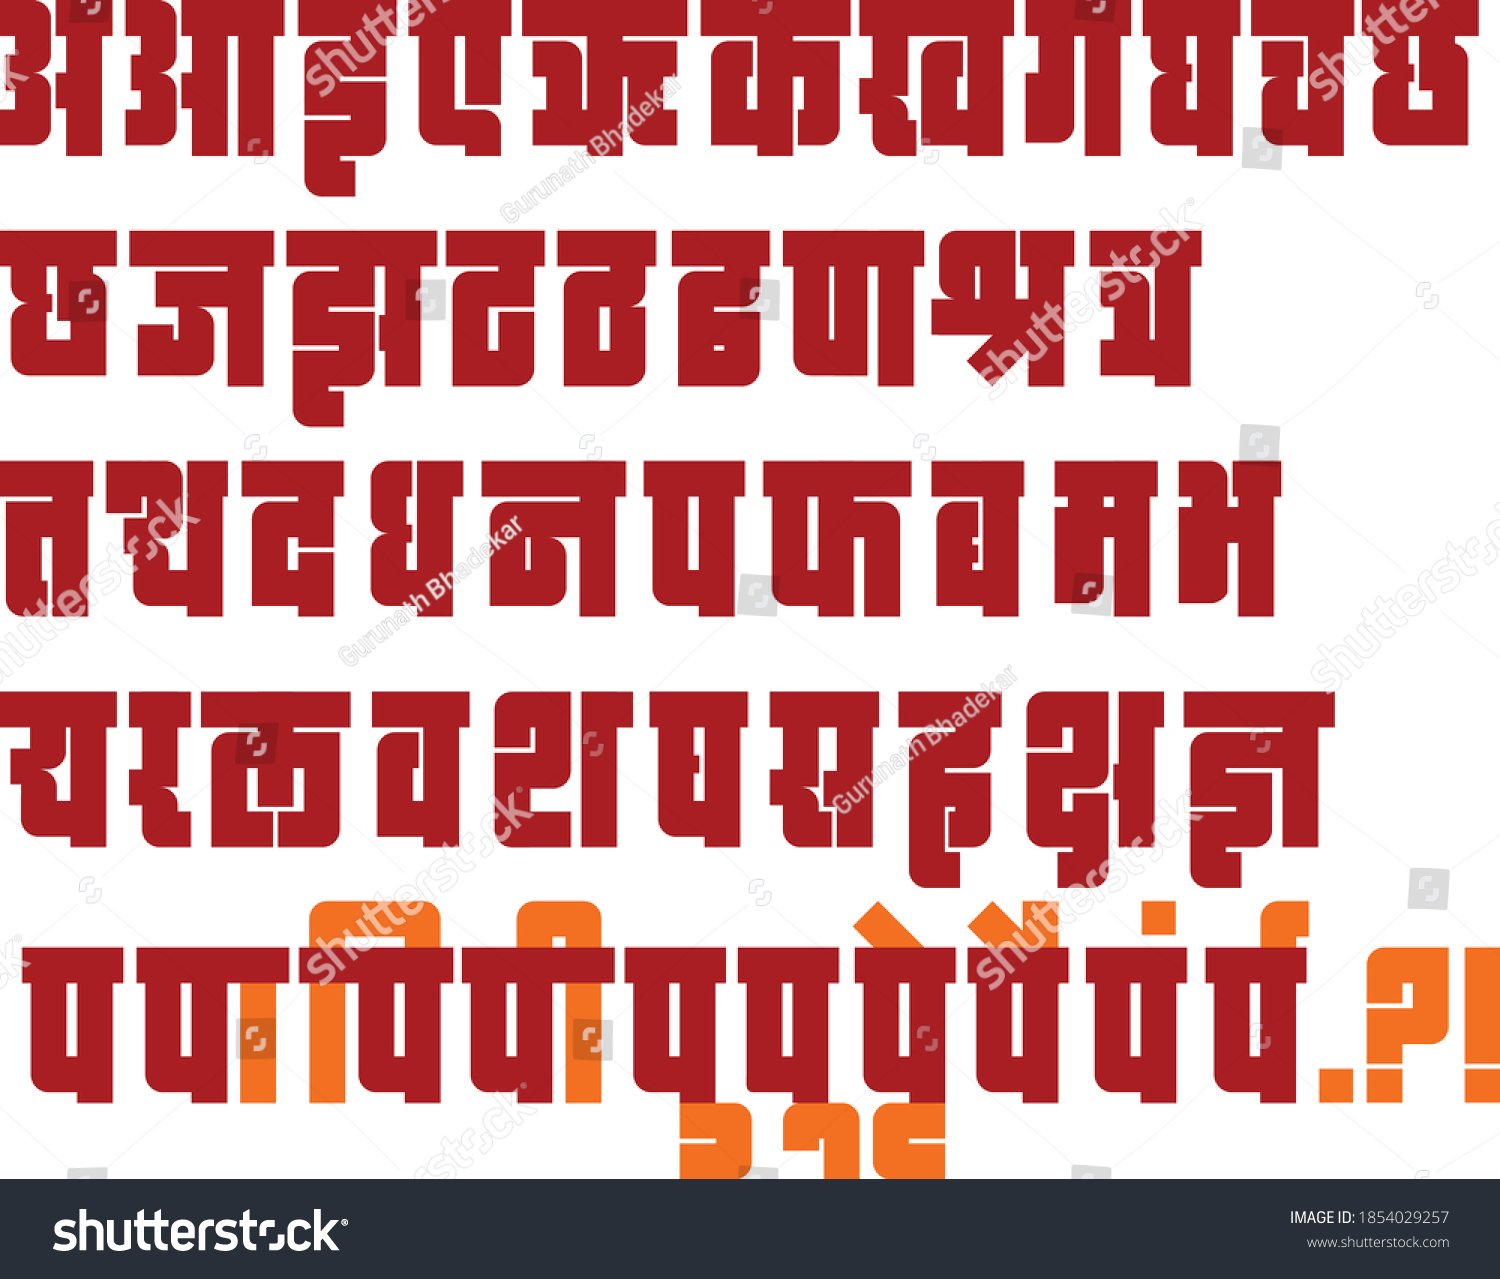 Hindi Marathi Indian Languages Alphabets Designed Stock Vector (Royalty  Free) 1854029257